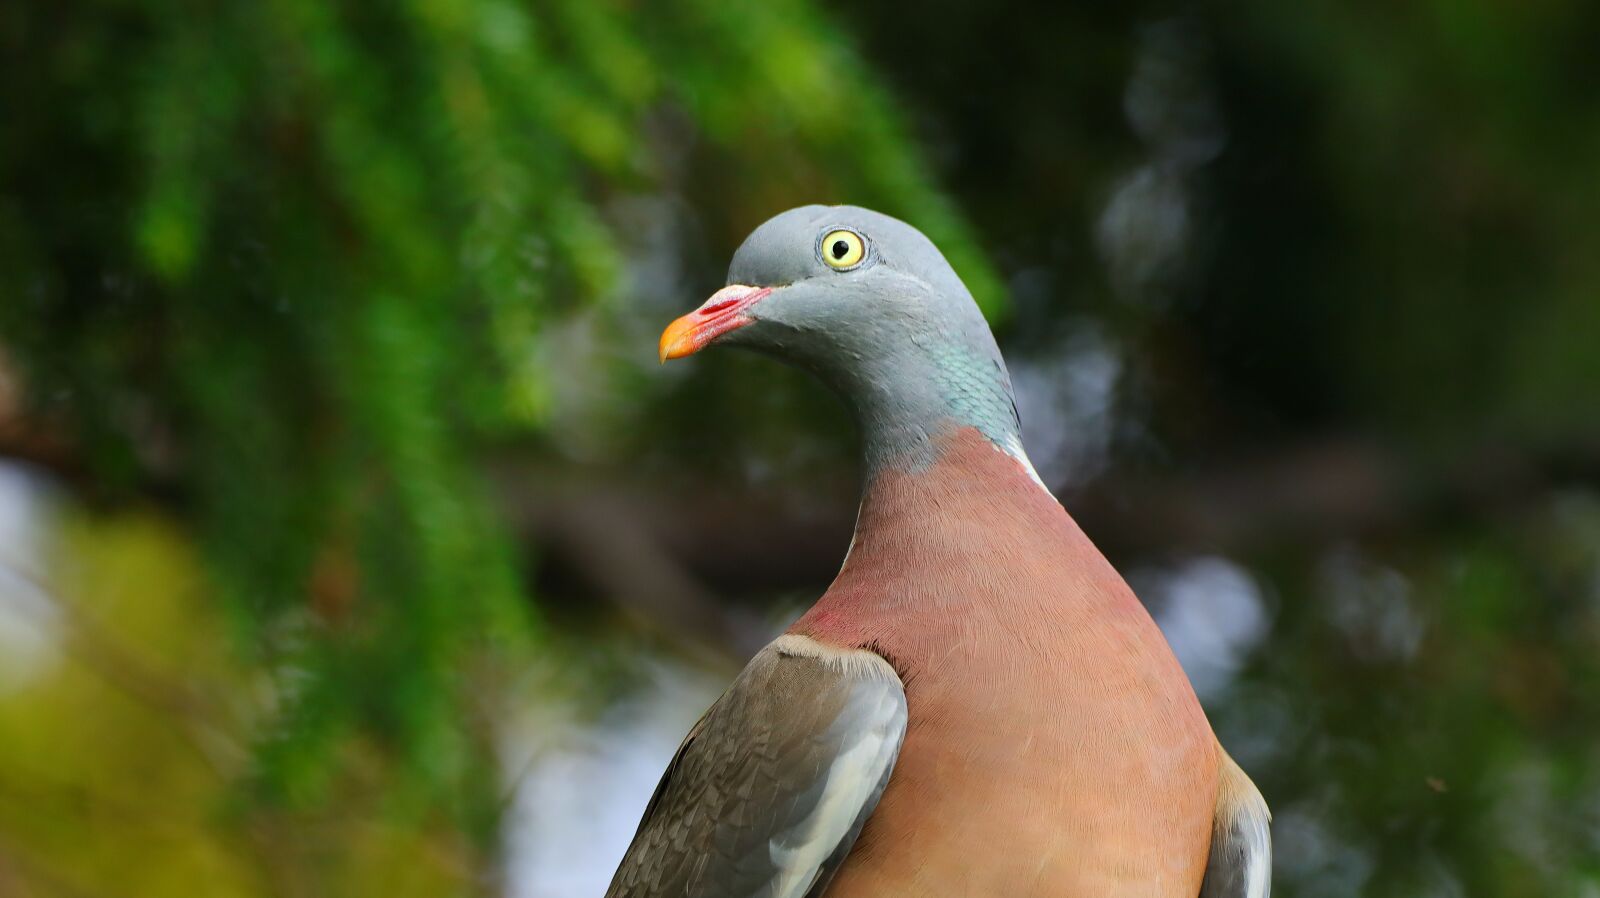 Canon EOS M50 (EOS Kiss M) sample photo. Dove, bird, feather photography